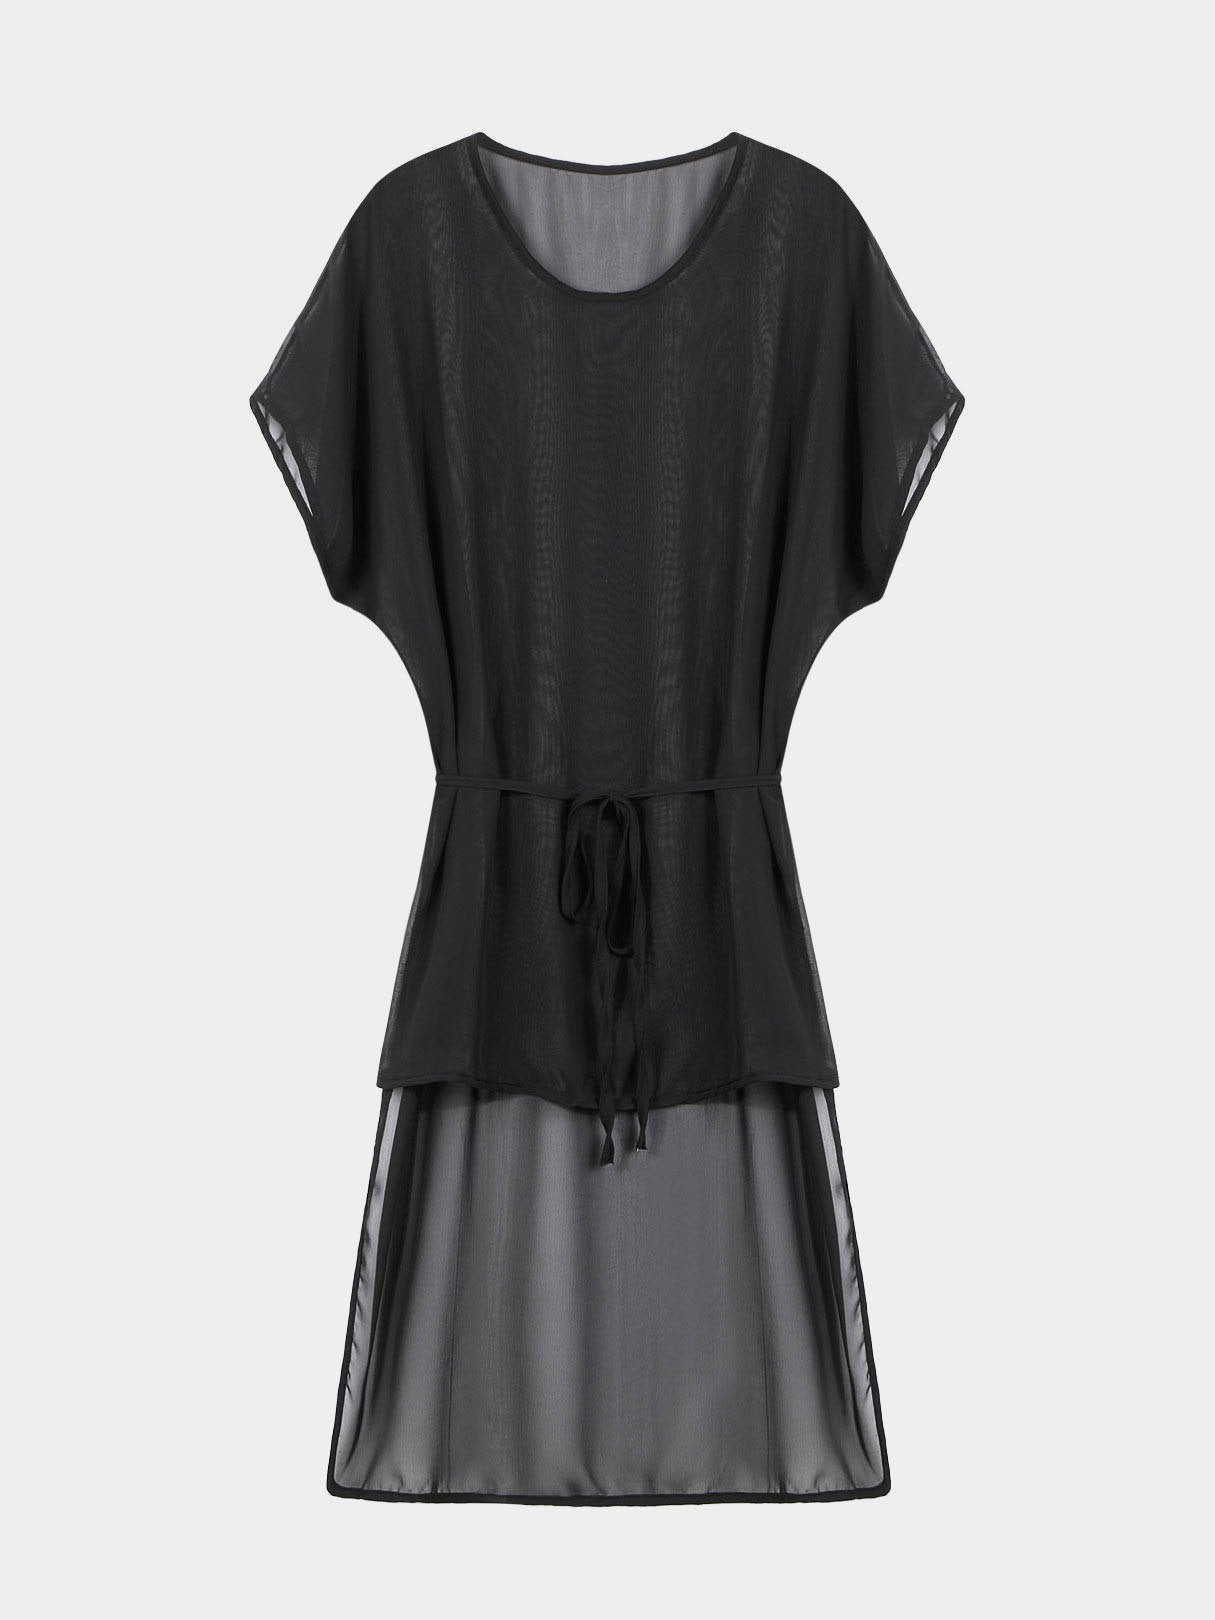 Wholesale Black Sleeveless Chiffon Dress